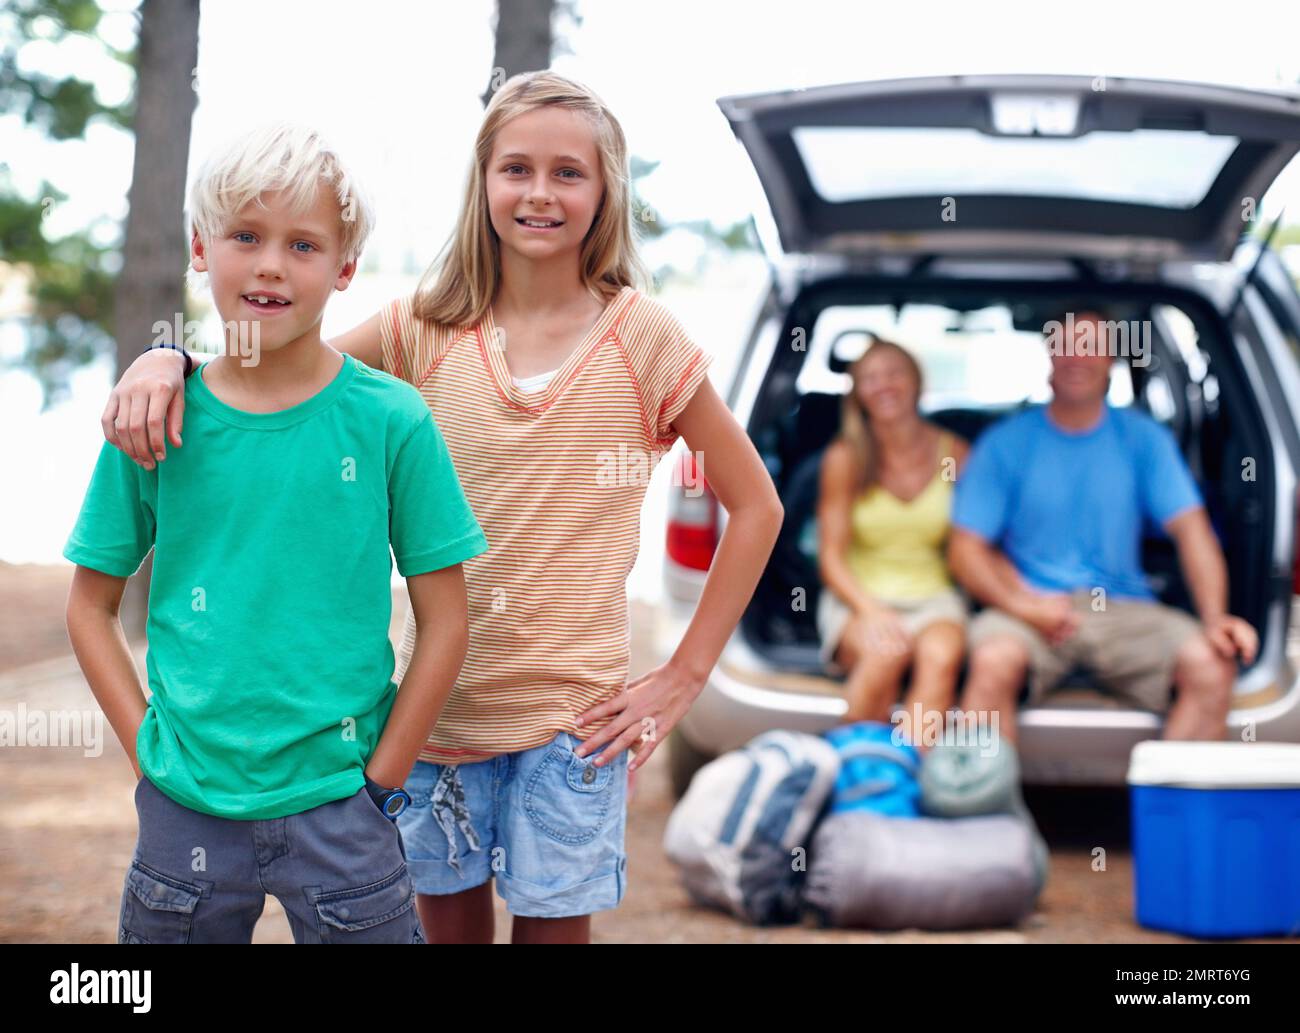 Vacanza in famiglia. Ritratto di giovane fratello e sorella godendo la loro vacanza con i genitori seduti sul retro di una macchina. Foto Stock